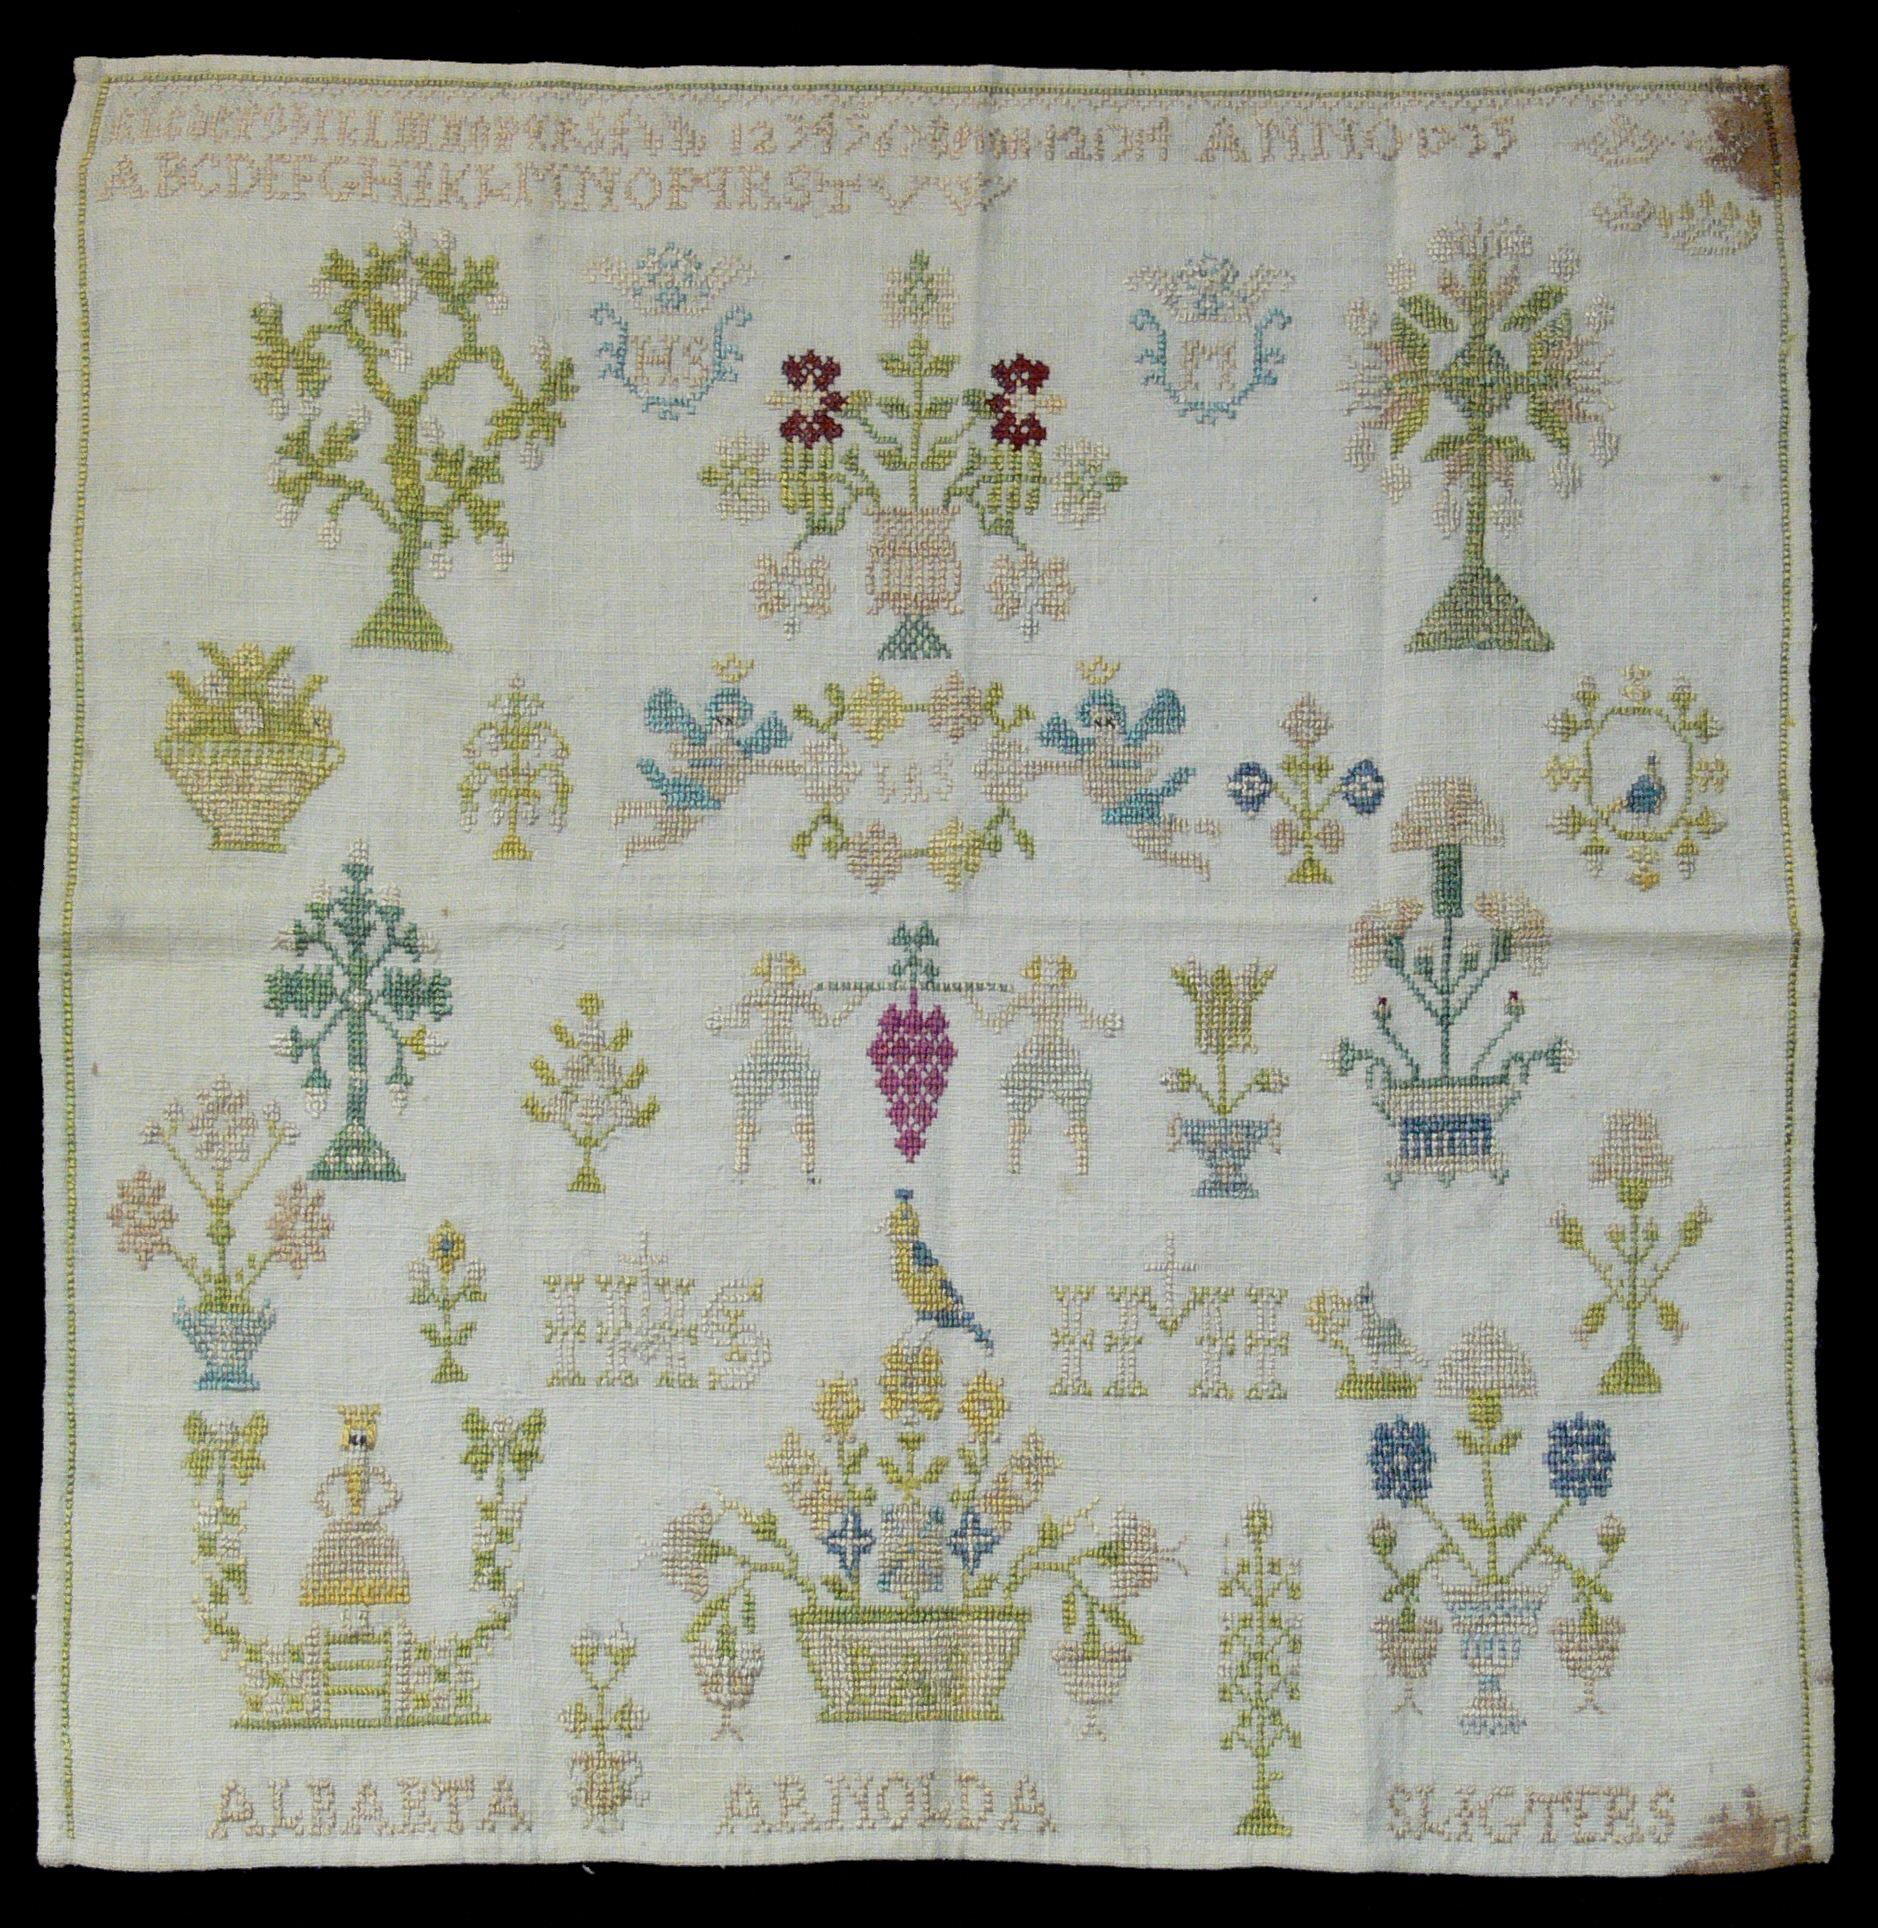 Celtic Embroidery Patterns Cross Stitch Wikipedia